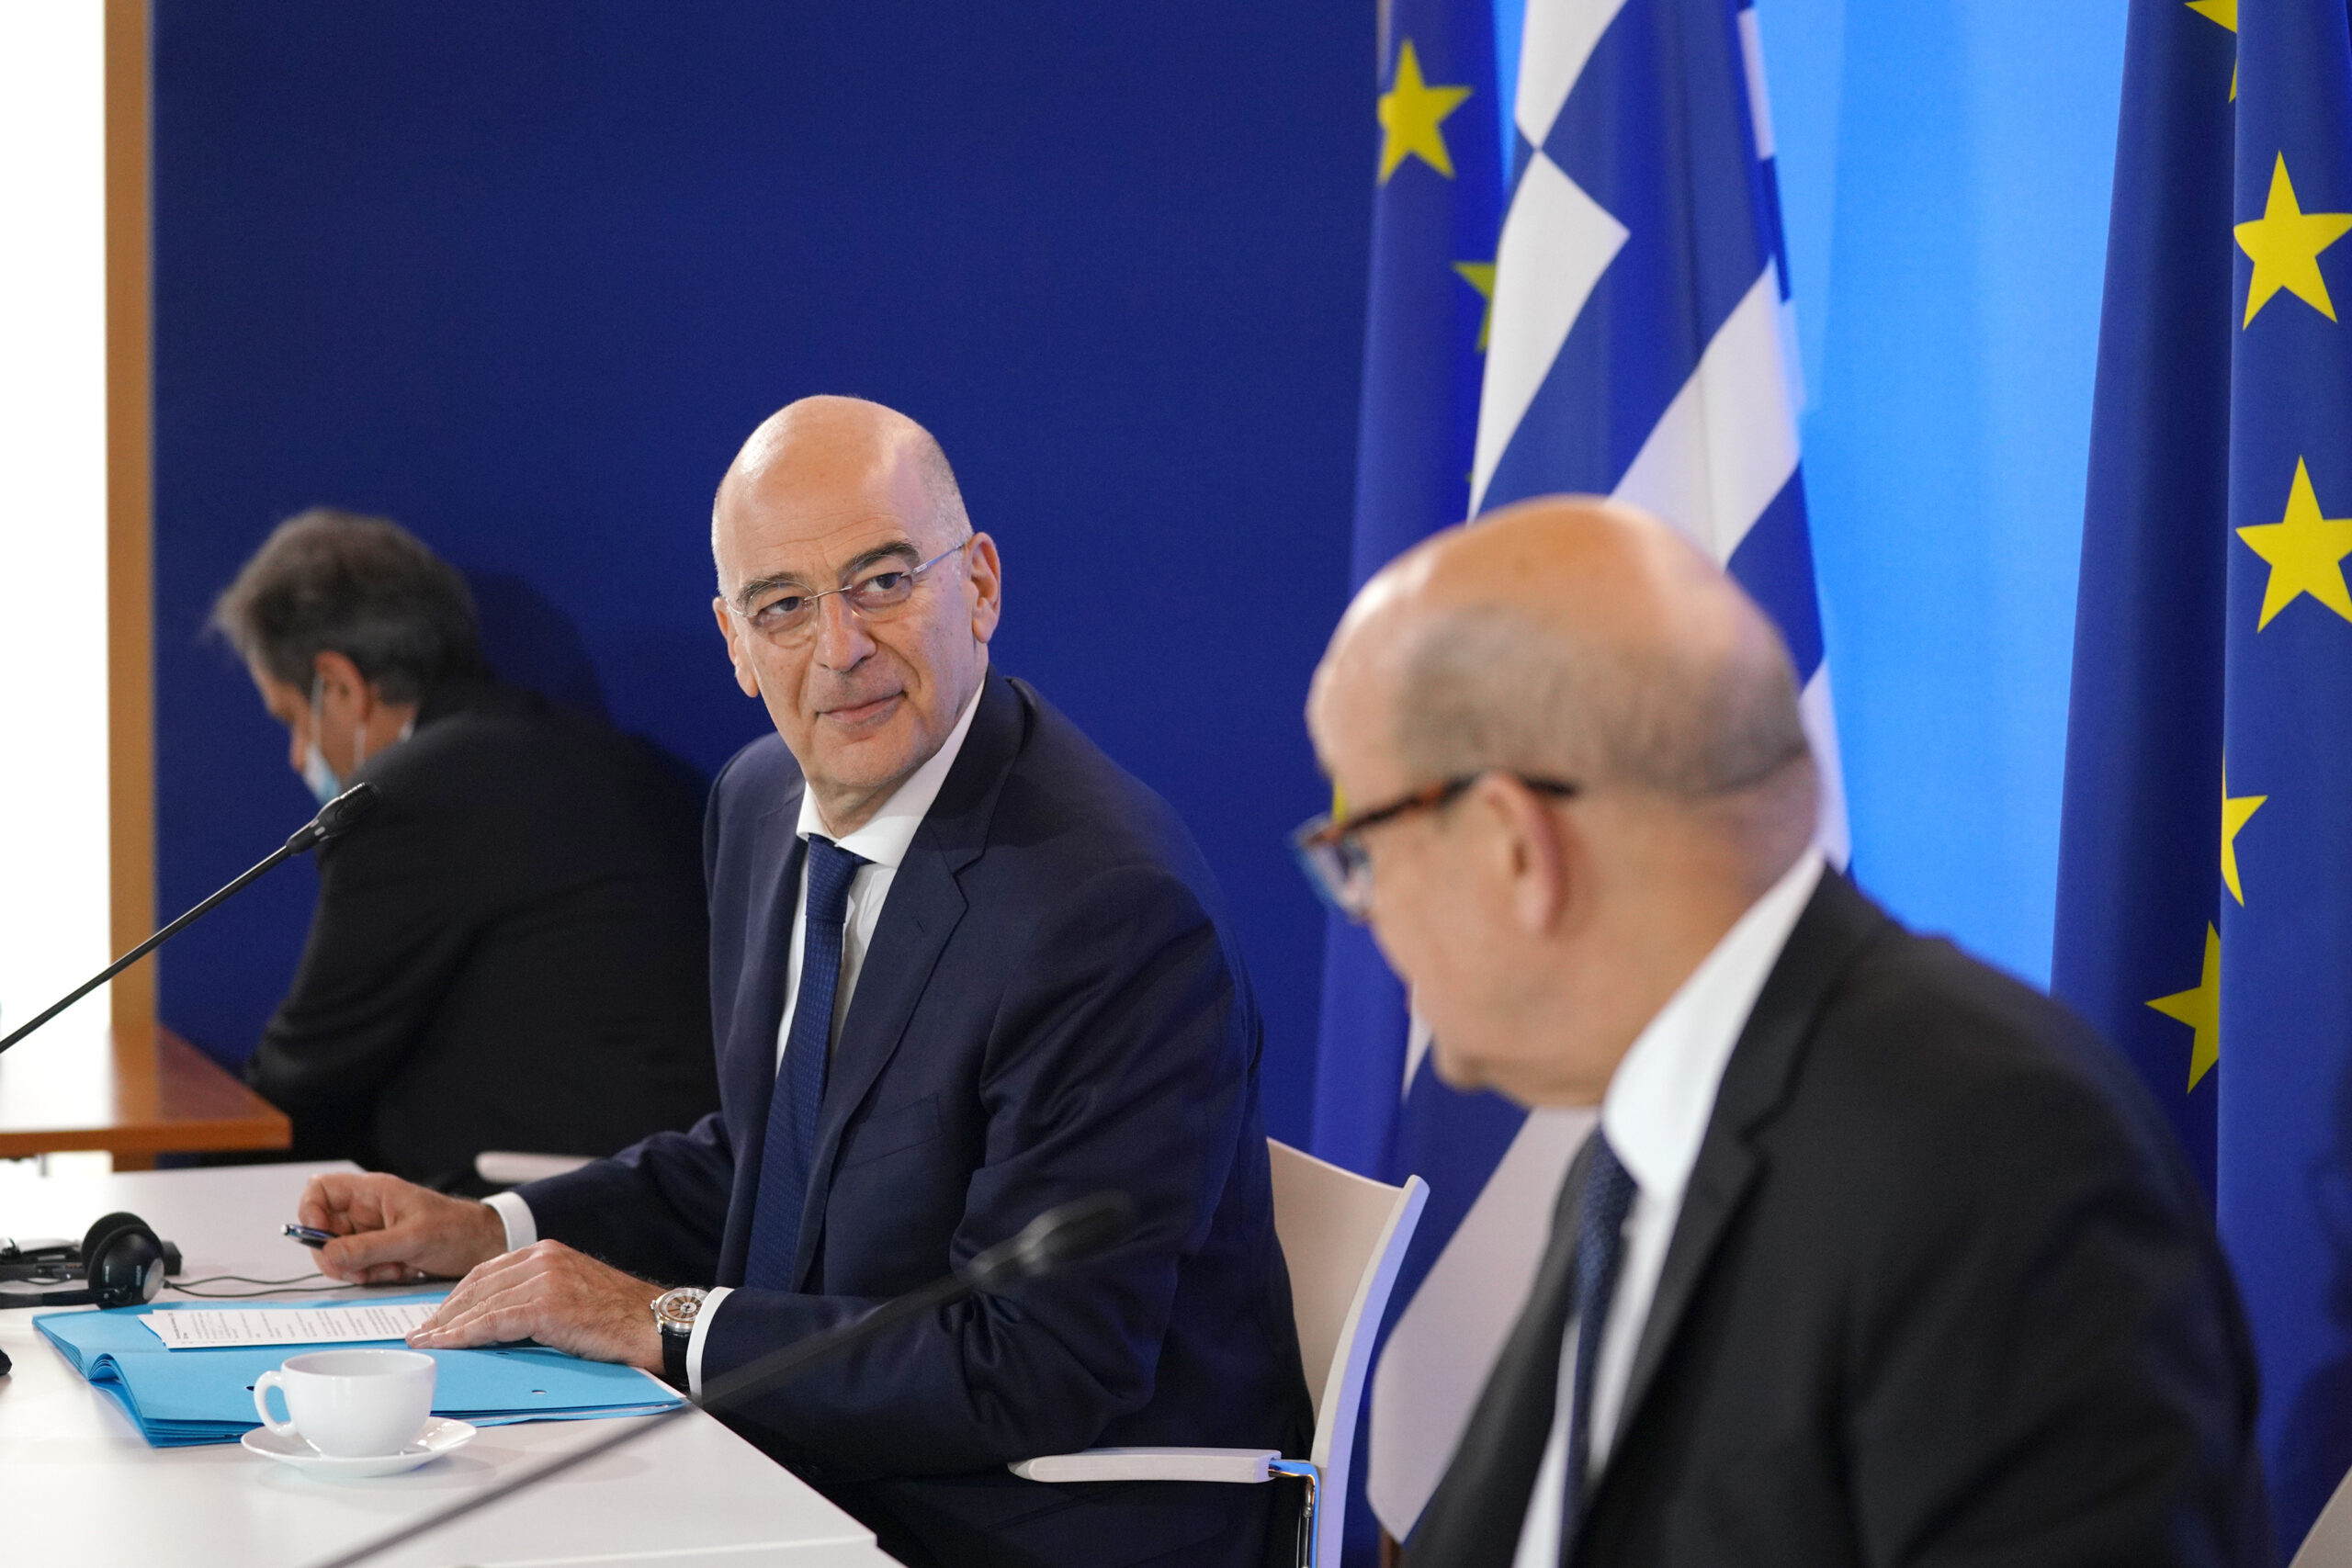 Επίσκεψη του Υπουργού Εξωτερικών, Νίκου Δένδια, στη Γαλλία και συμμετοχή του στο Συμβούλιο Εξωτερικών Υποθέσεων (ΣΕΥ) της ΕΕ (Παρίσι, 15.06.2020)